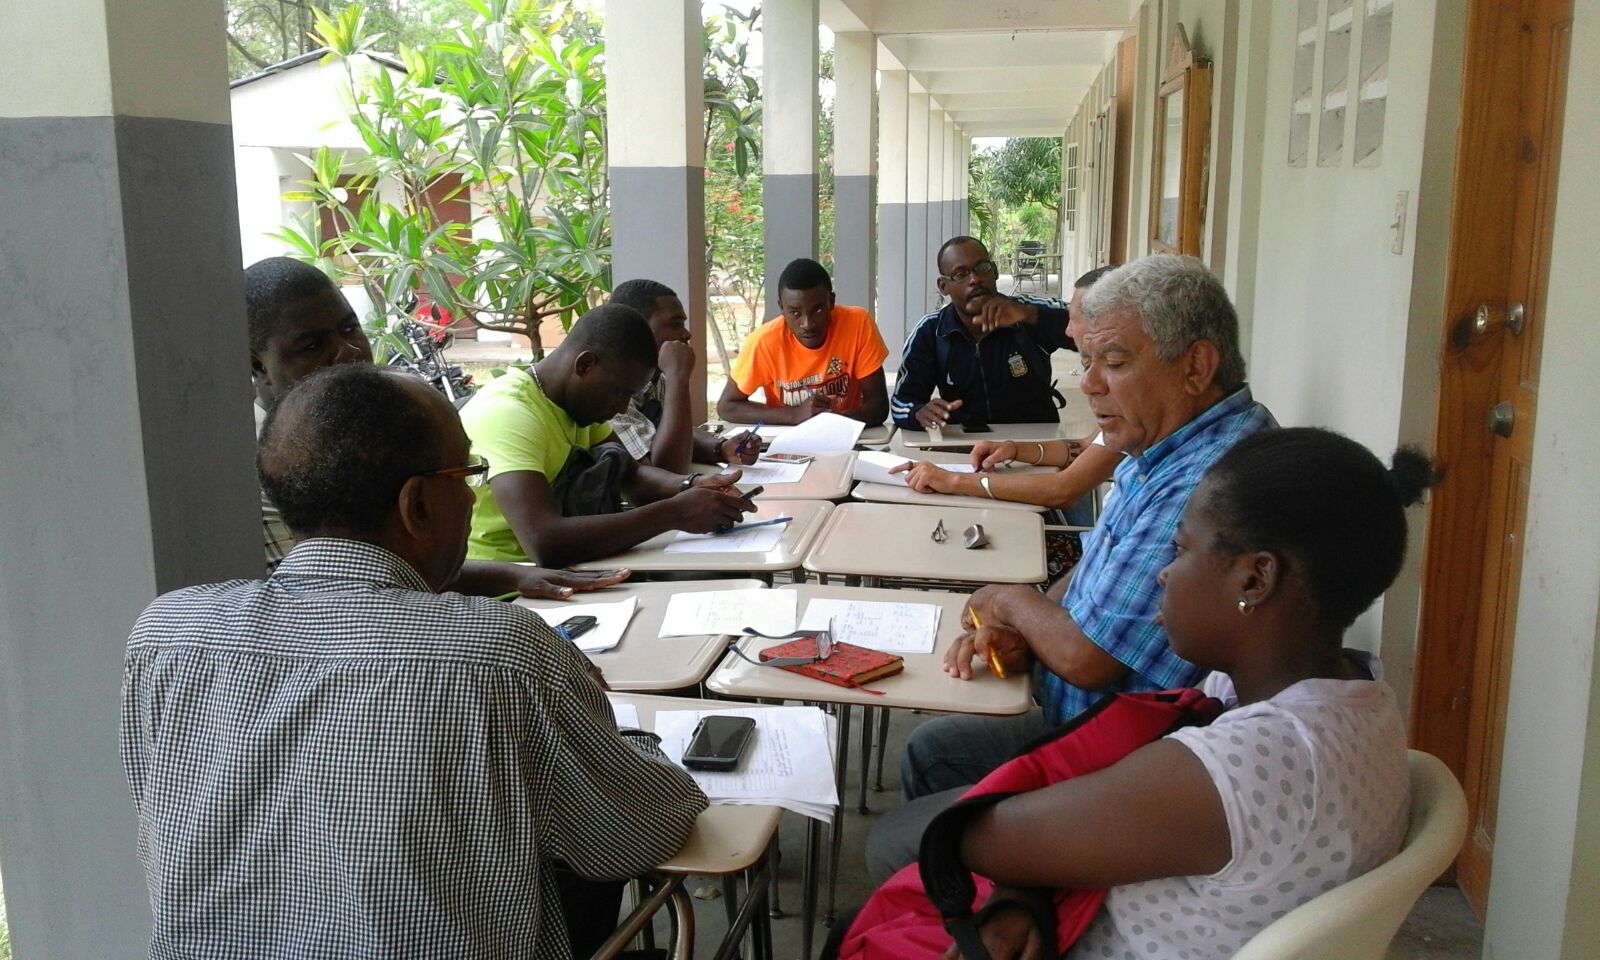 Francisco Fabres della Conferenza missionaria della Svizzera italiana insieme ad un gruppo di studio con insegnanti haitiani. Da settembre coordinerà anche un corso di formazione per giovani preti e laici